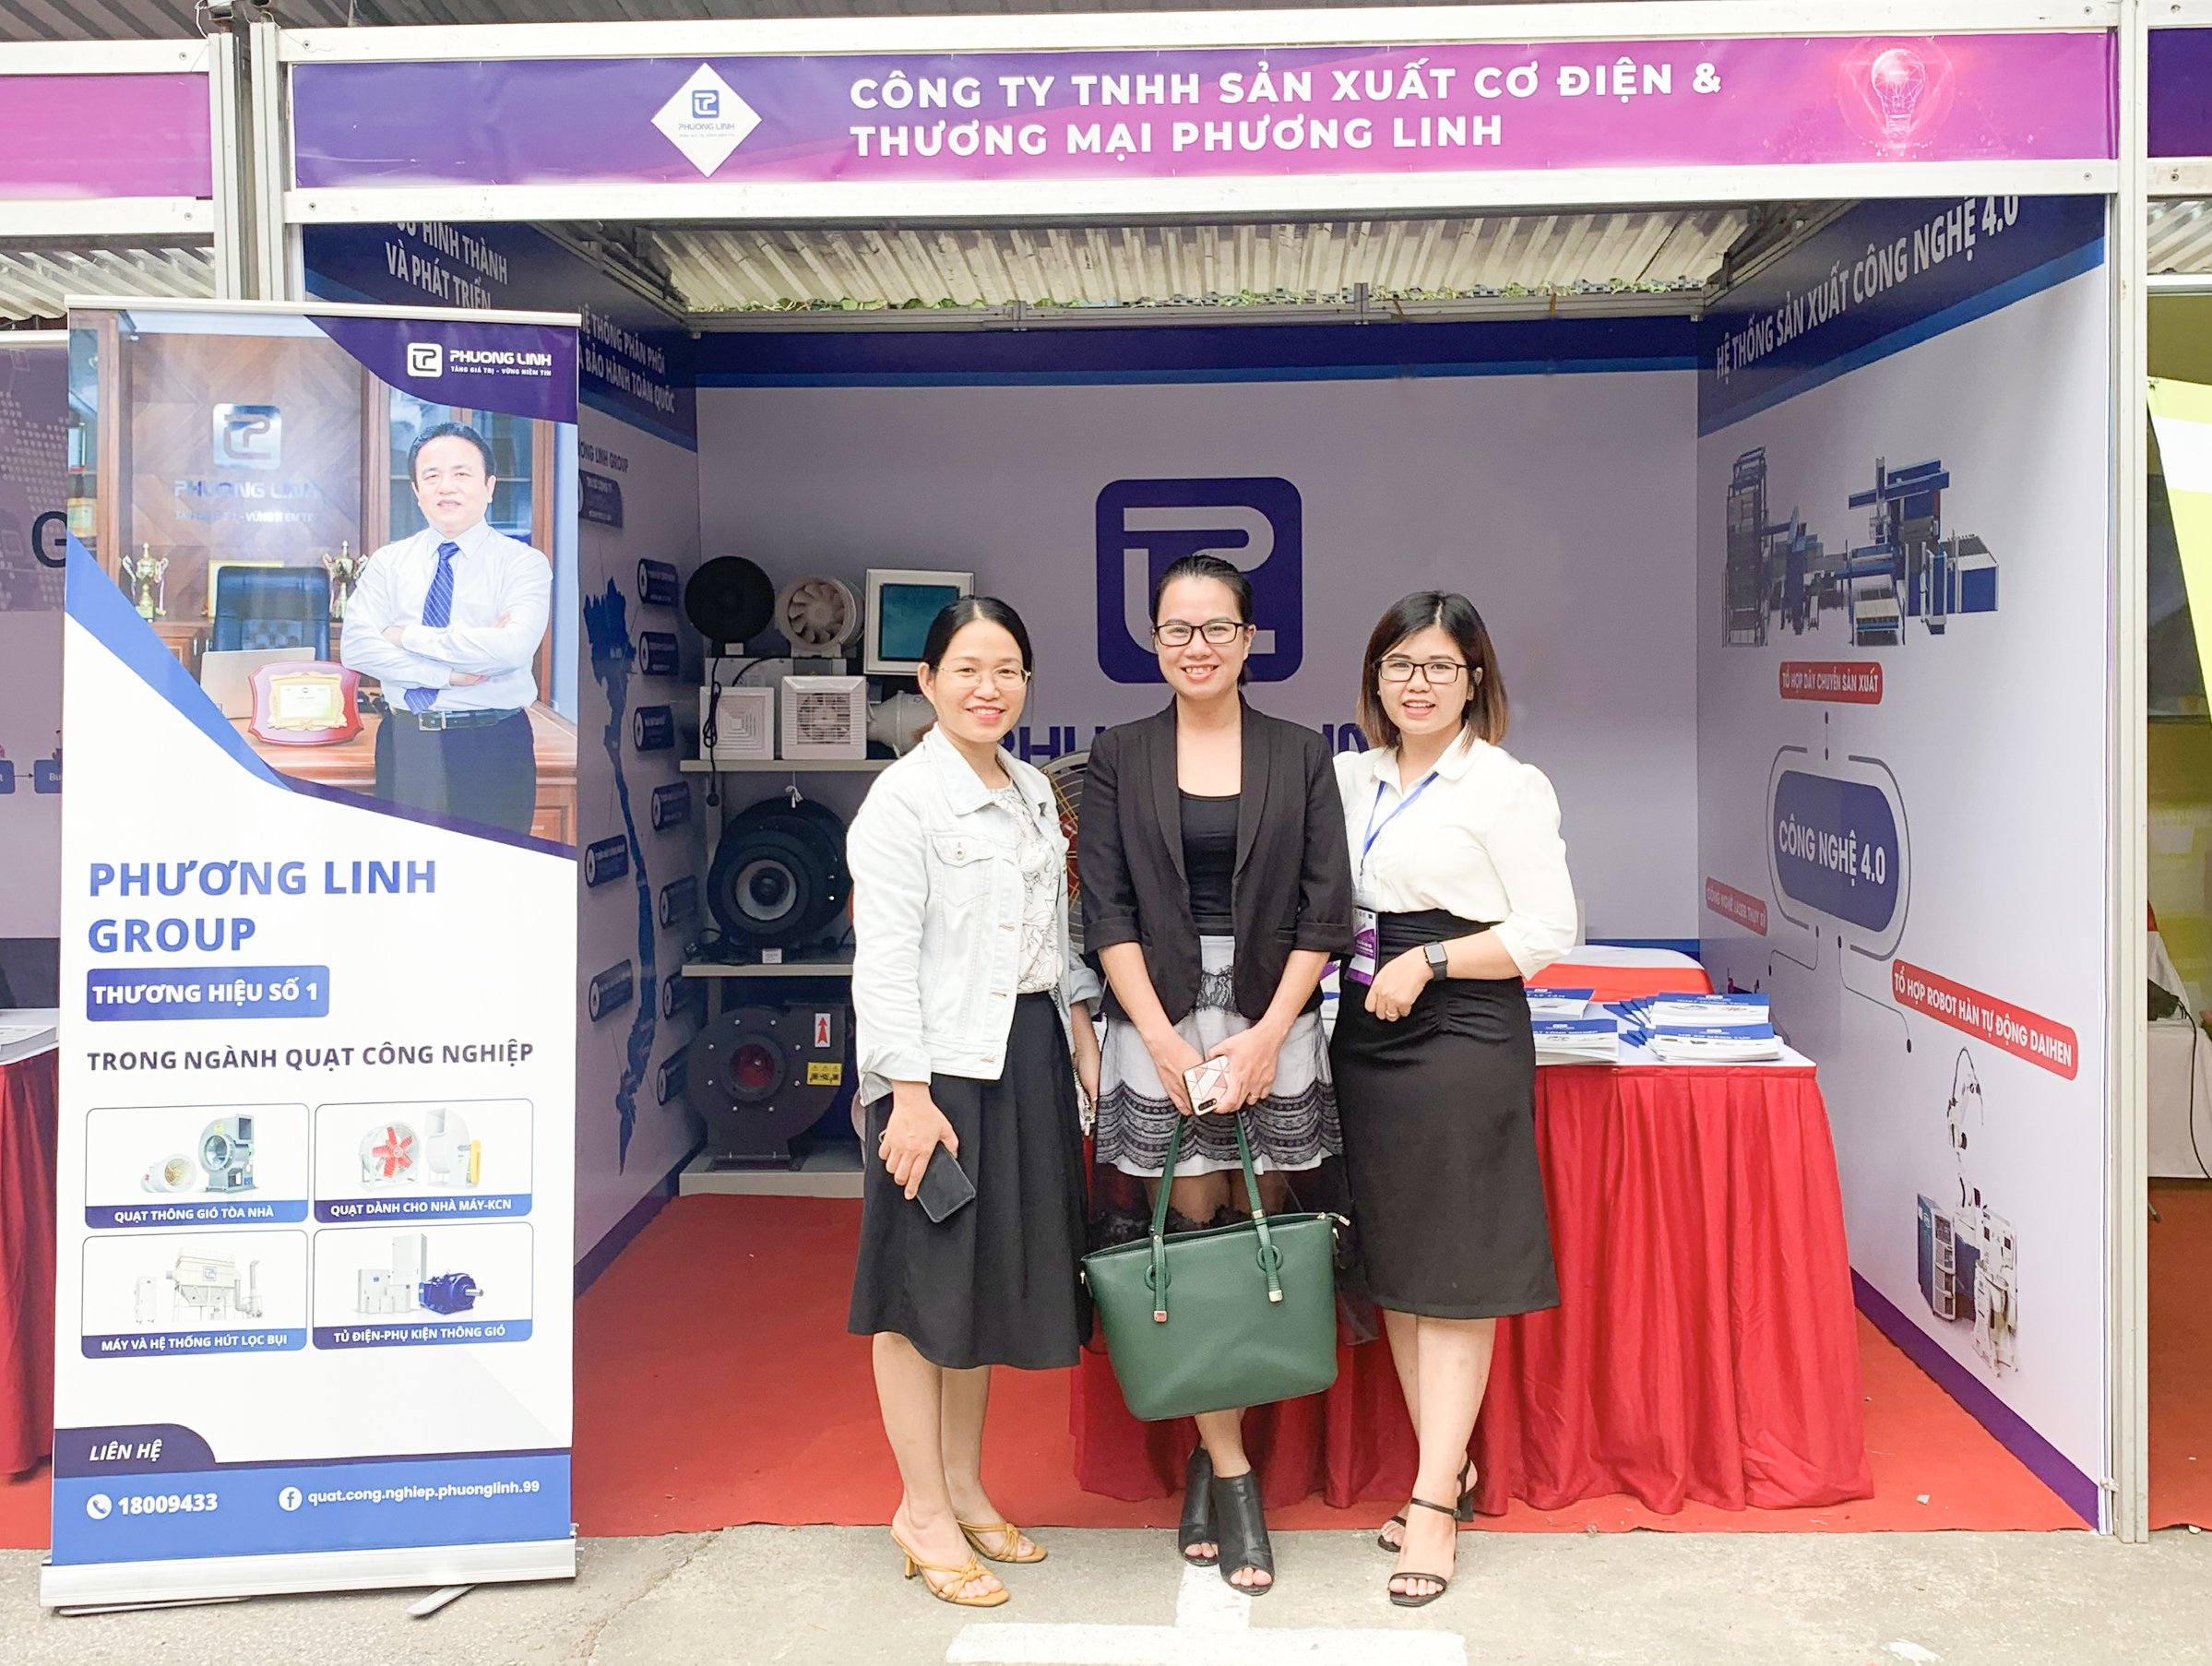 Công ty TNHH Sản xuất Cơ điện và Thương mại Phương Linh đã tham gia Diễn đàn đổi mới sáng tạo Việt Nam – VAF 2020